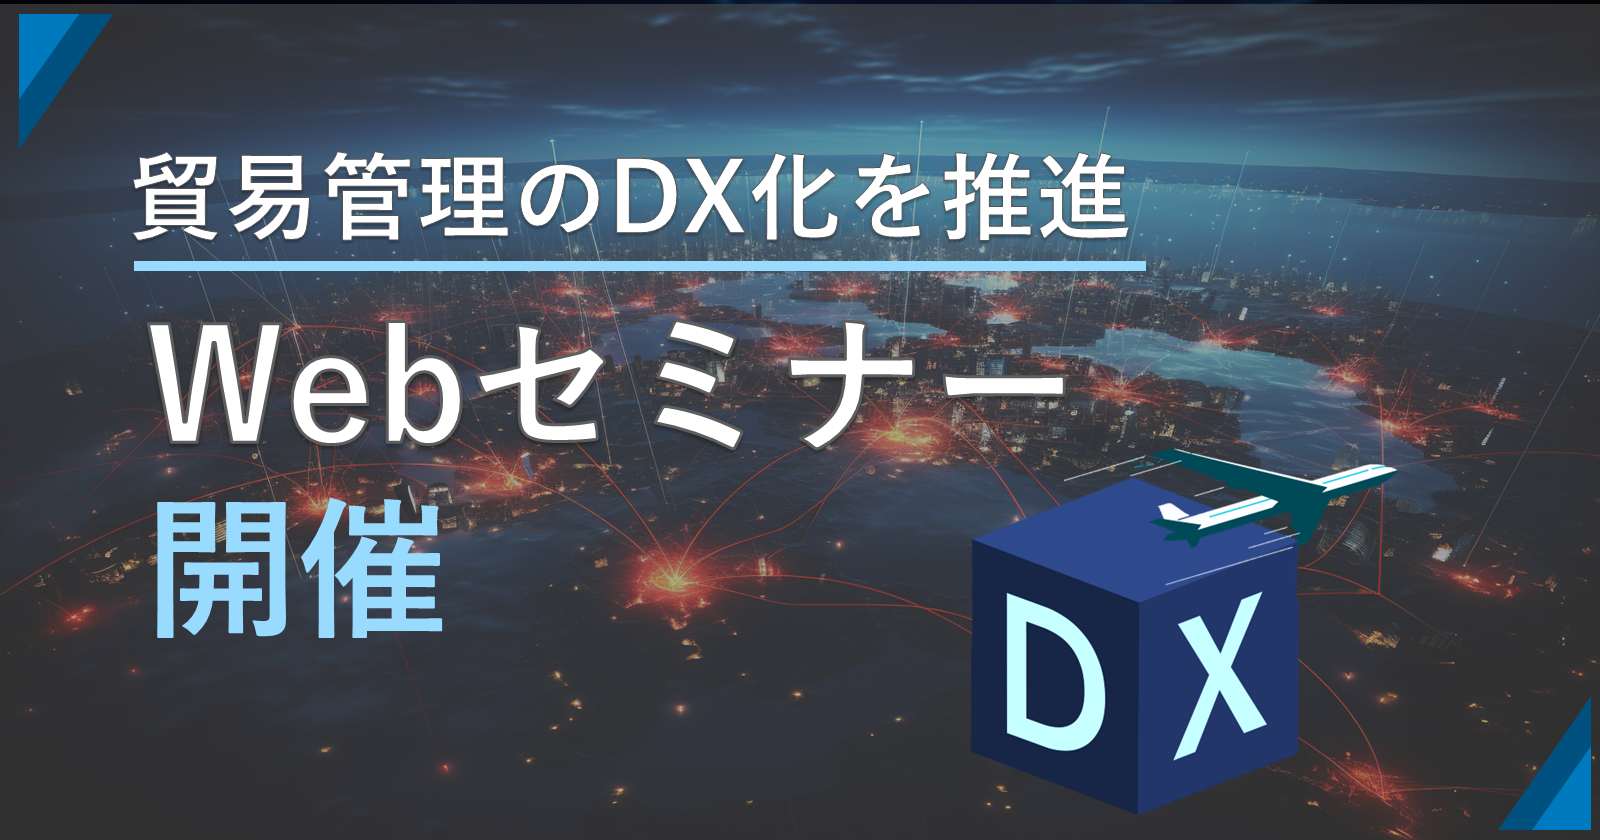 サプライチェーンの新発想 
貿易管理のDXを推進する"SCLINK+"